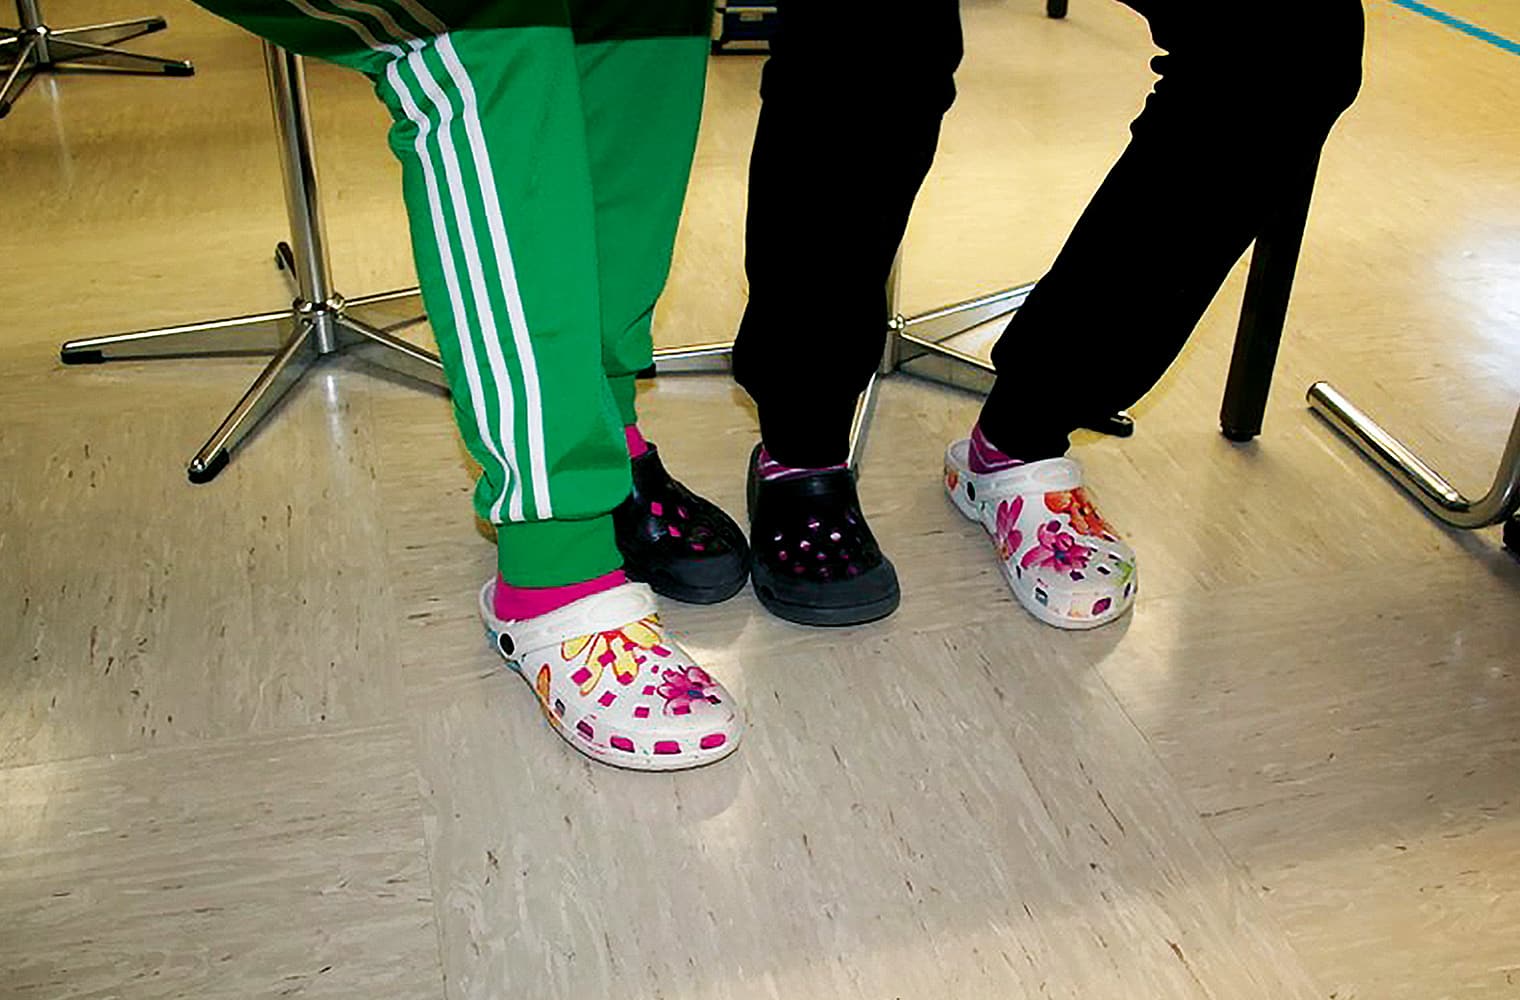 2 Schüler haben das Schuhwerk getauscht, sodass jeder zwei verschiedene Sandalen anhat.